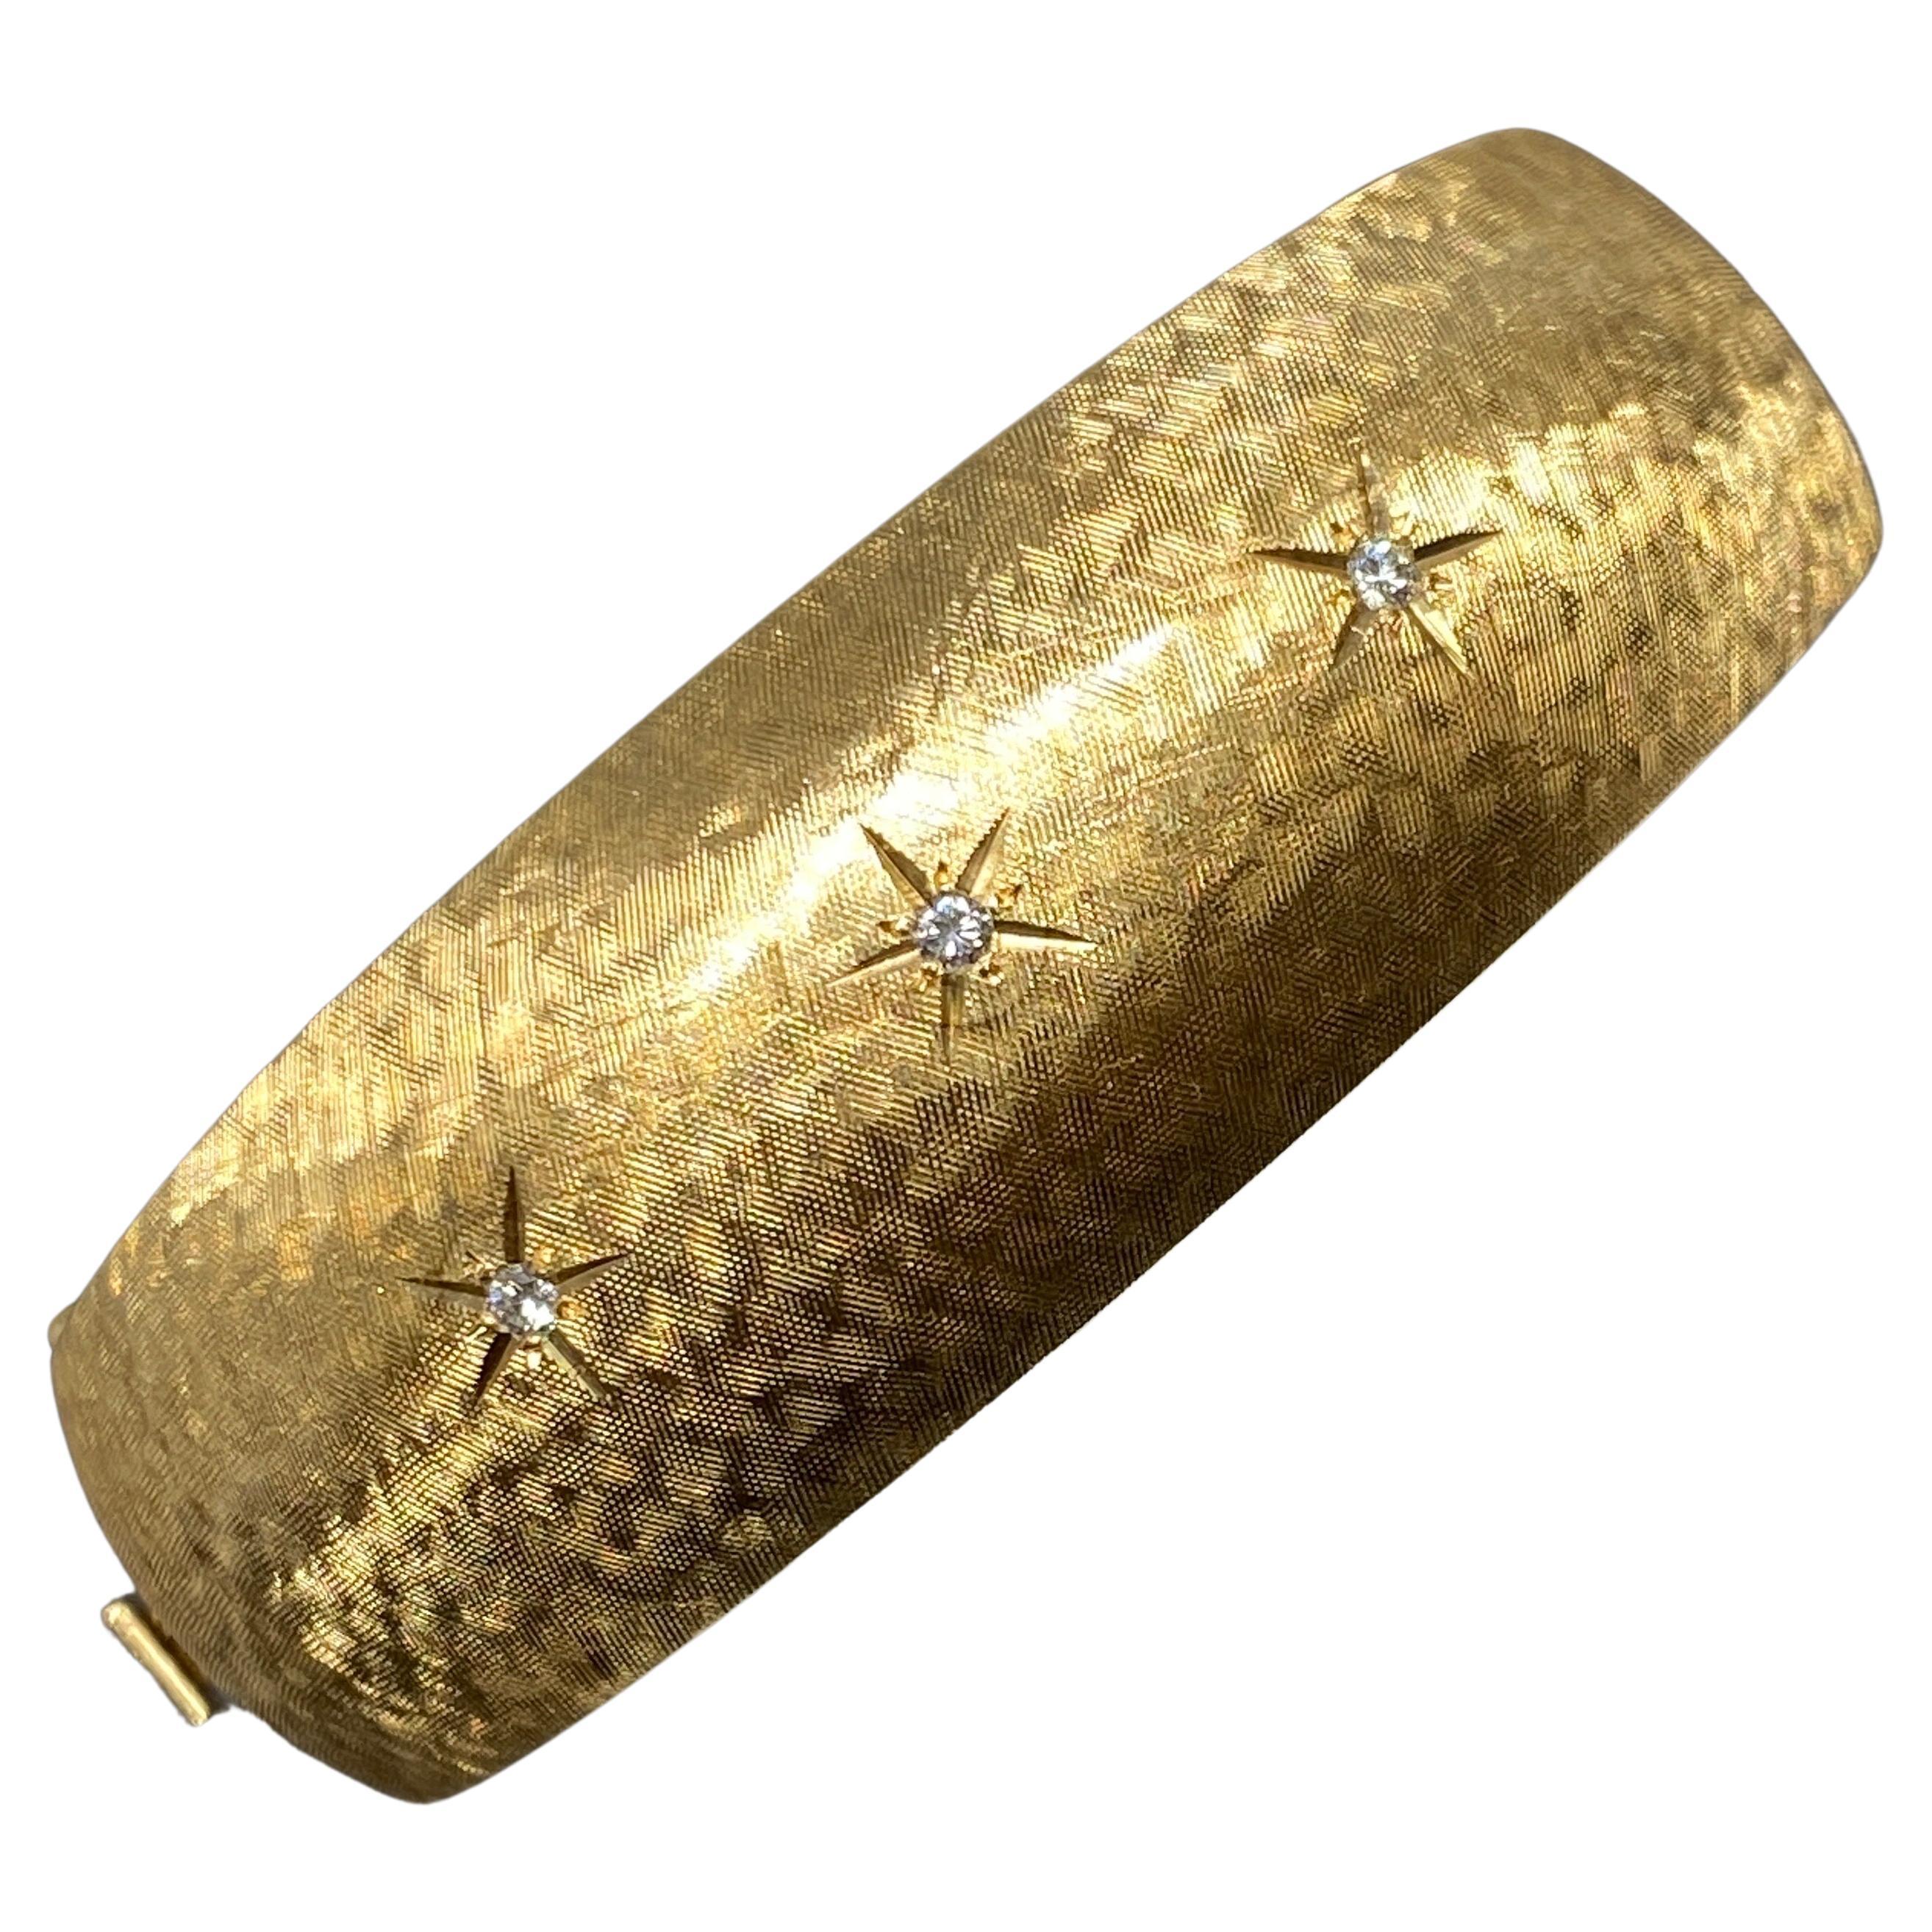 Up&Up vous propose ce fantastique bracelet à charnière en or jaune 14kt, datant des années 1960.

Ce grand, audacieux et magnifique bracelet large et convexe est réalisé en or jaune 14 carats dans un magnifique style Florentine.  finition texturée. 